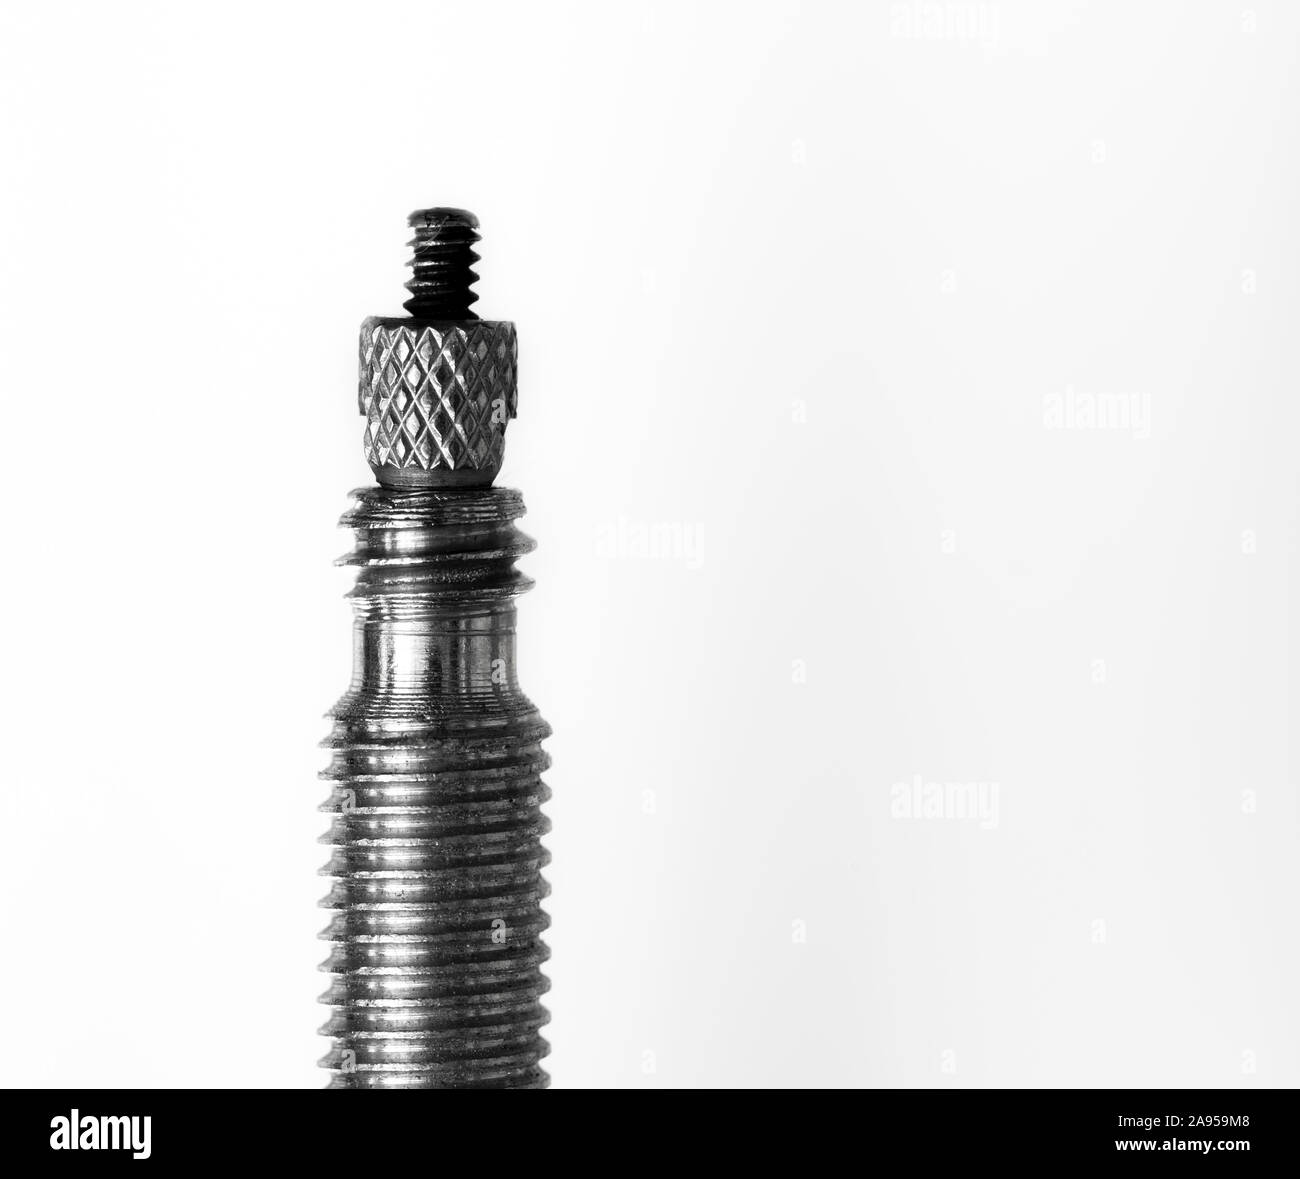 Makro Bild eines Presta Fahrrad Ventil vor einem weißen Hintergrund  Stockfotografie - Alamy